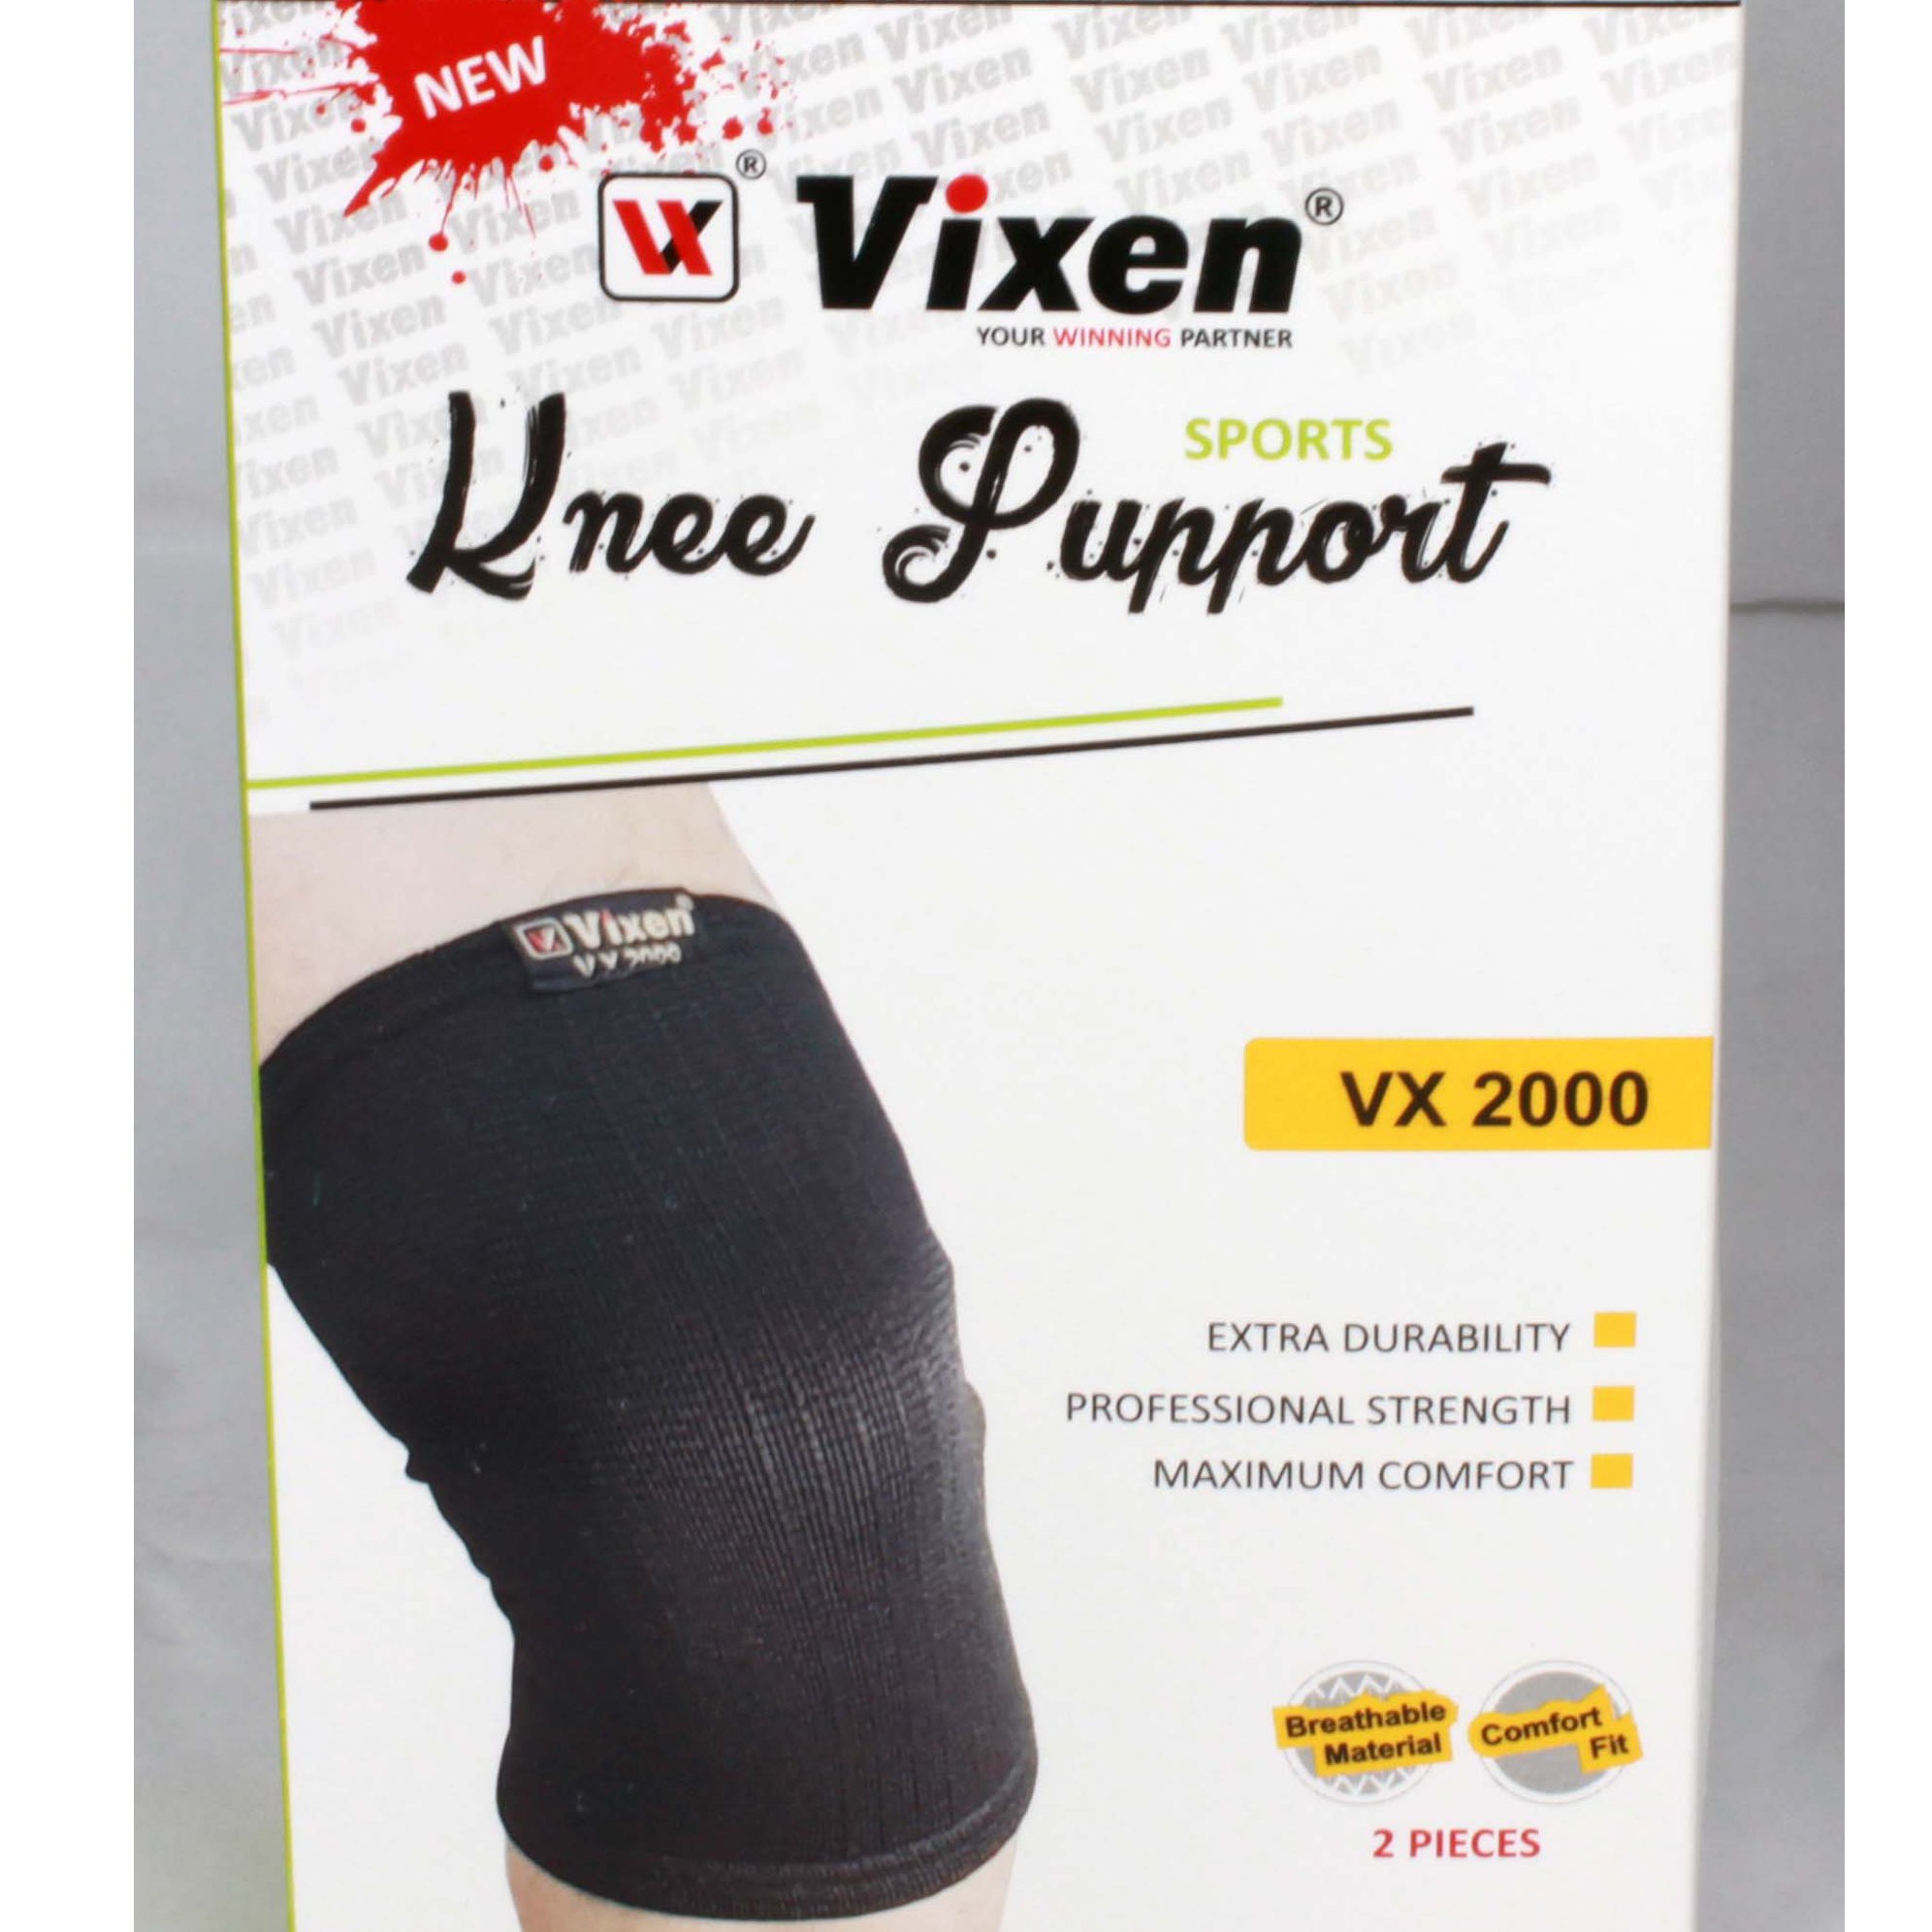 VIXEN SPORTS KNEE SUPPORT VX-2000